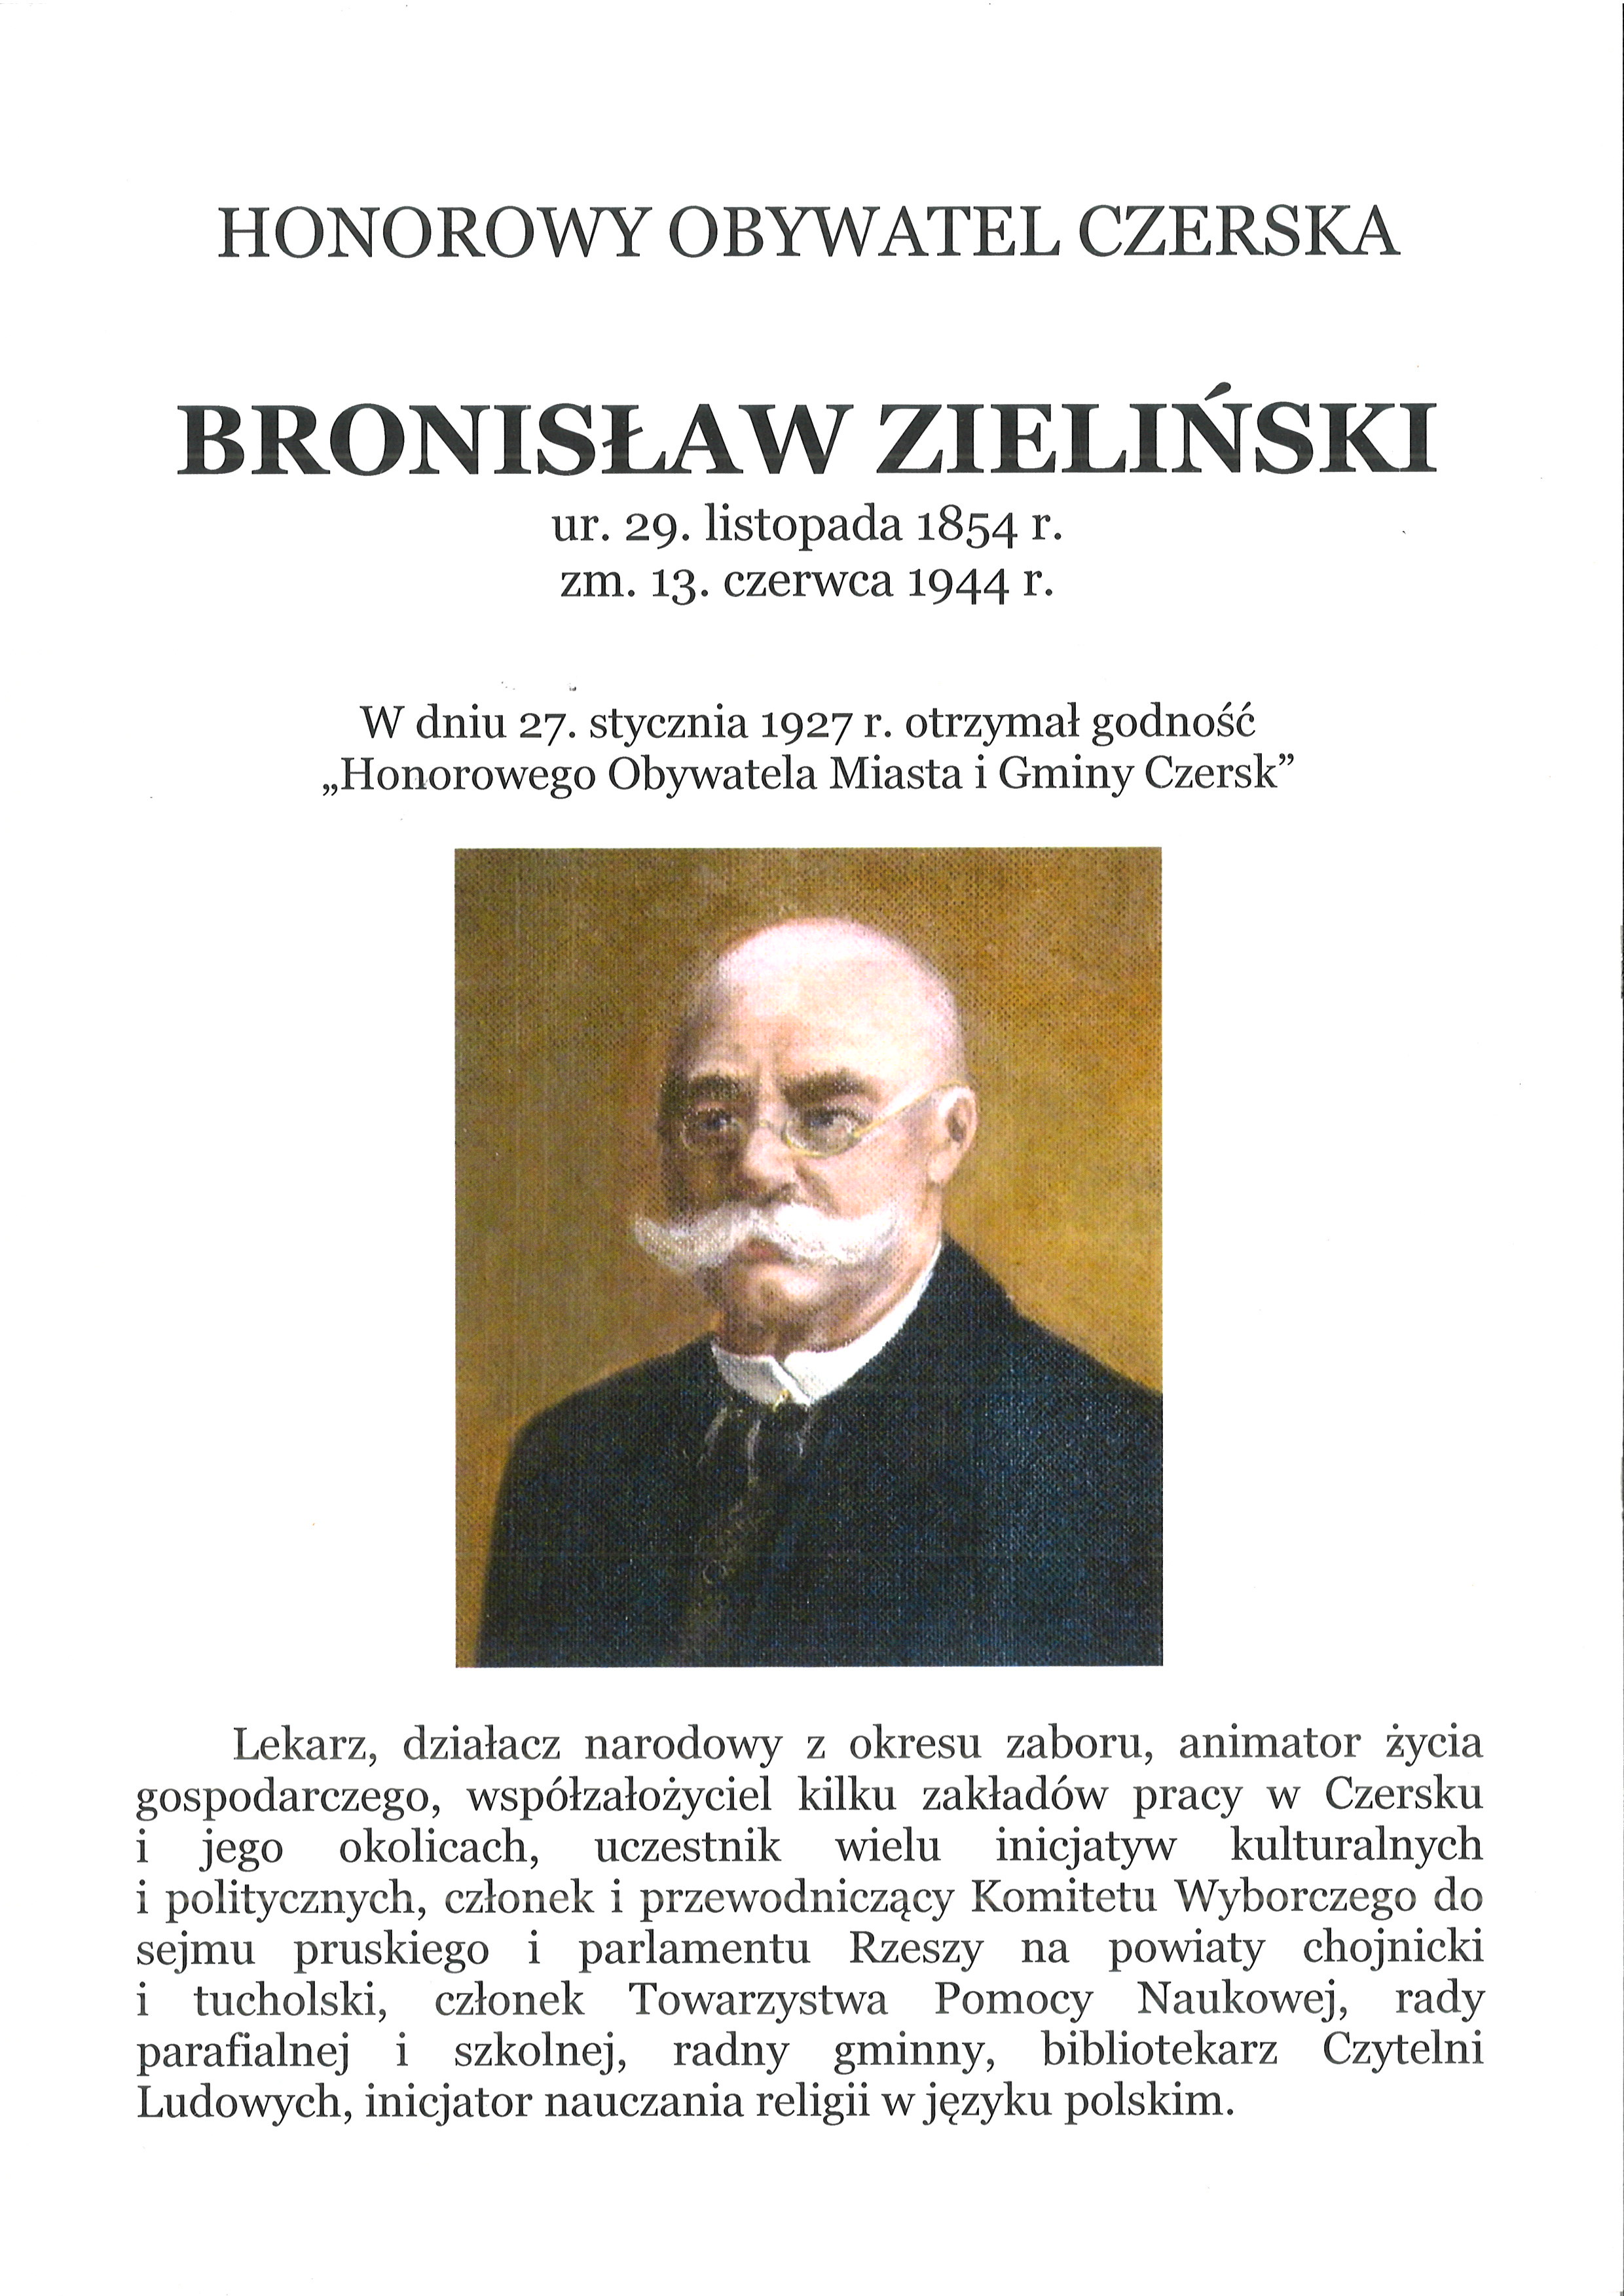 Bronisław Zieliński